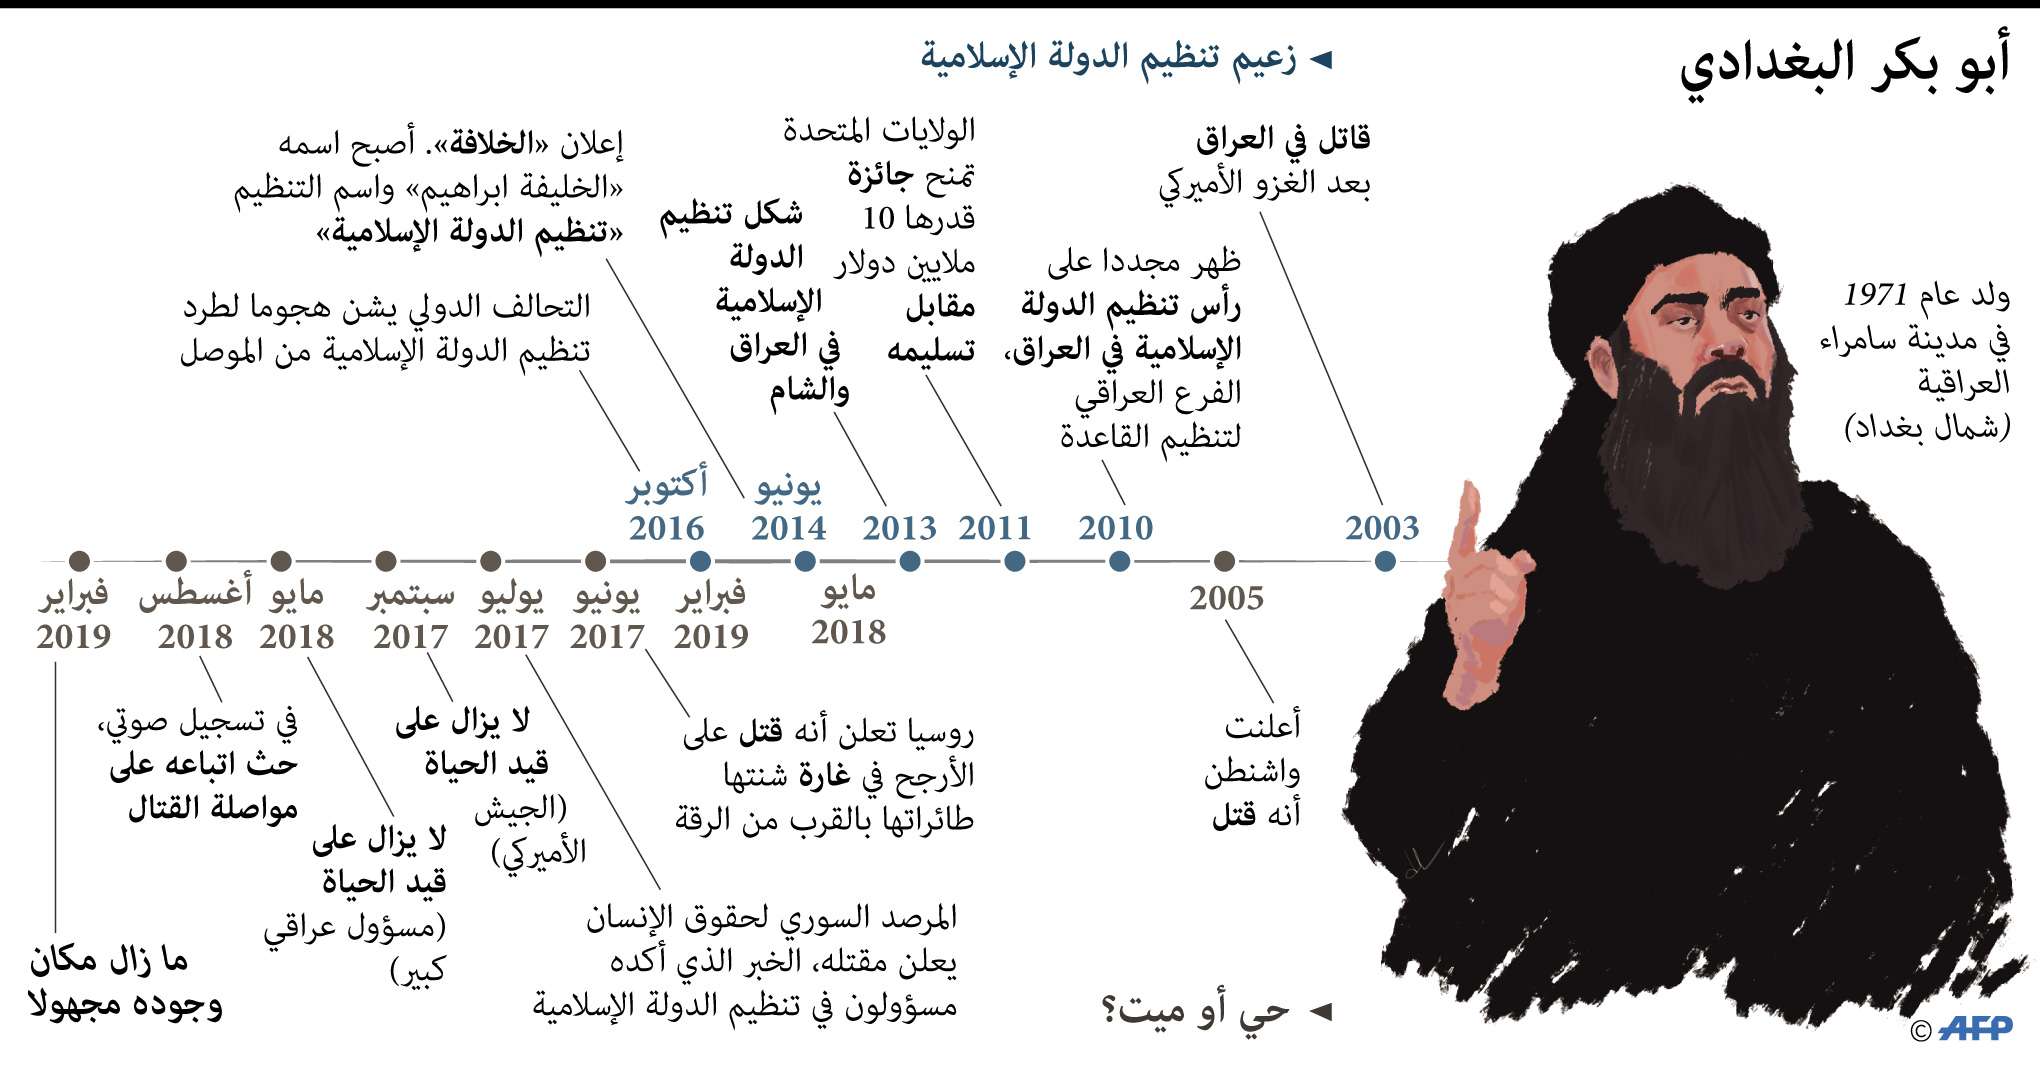 زعيم تنظيم الدولة الإسلامية أبوبكر البغدادي